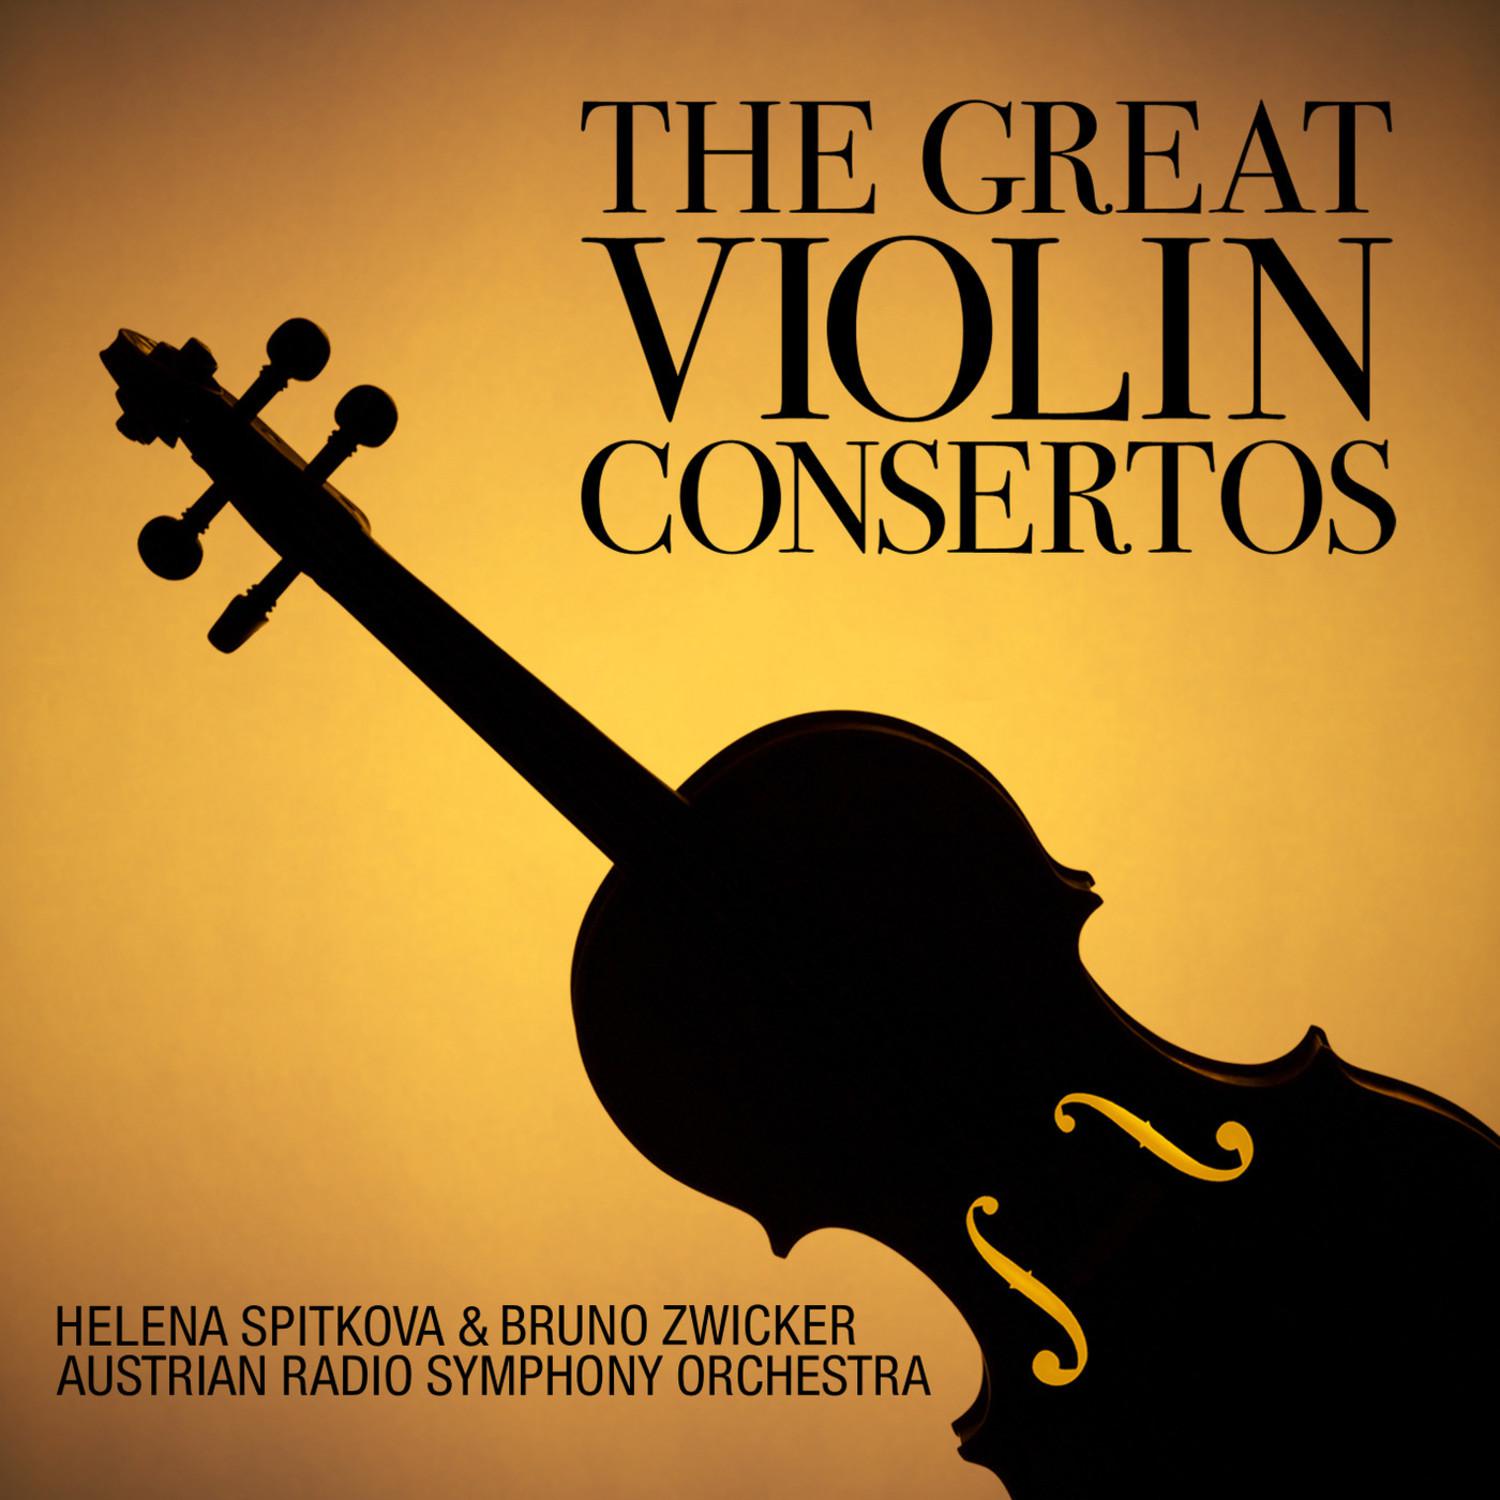 Concerto in D Minor for Violin and Orchestra, Op. 47: I. Allegro moderato